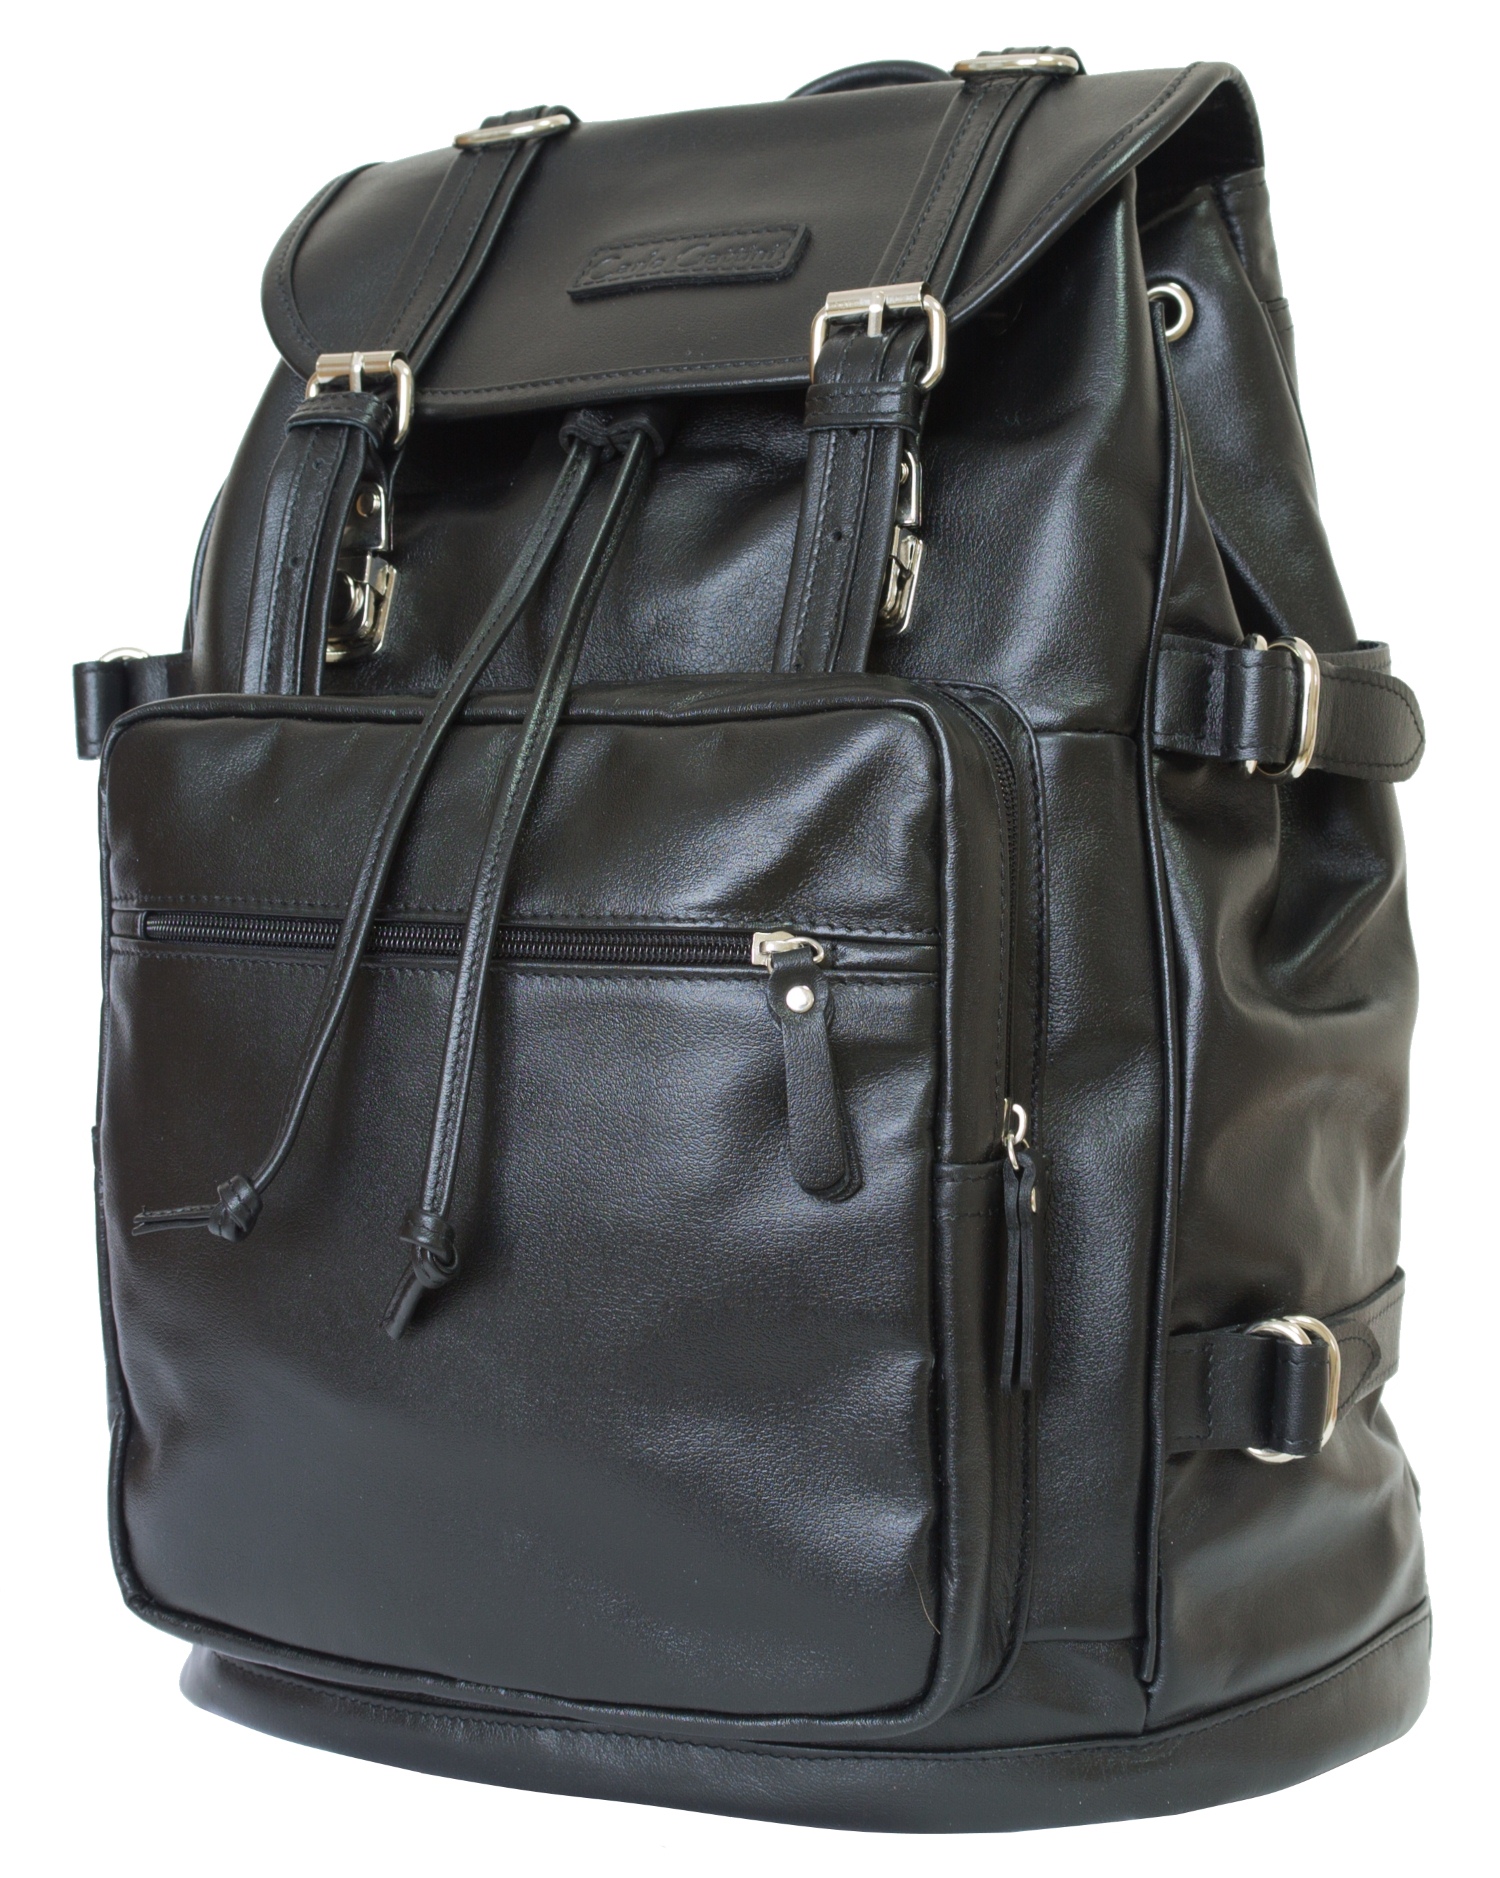 Кожаный рюкзак Volturno black (арт. 3004-05)